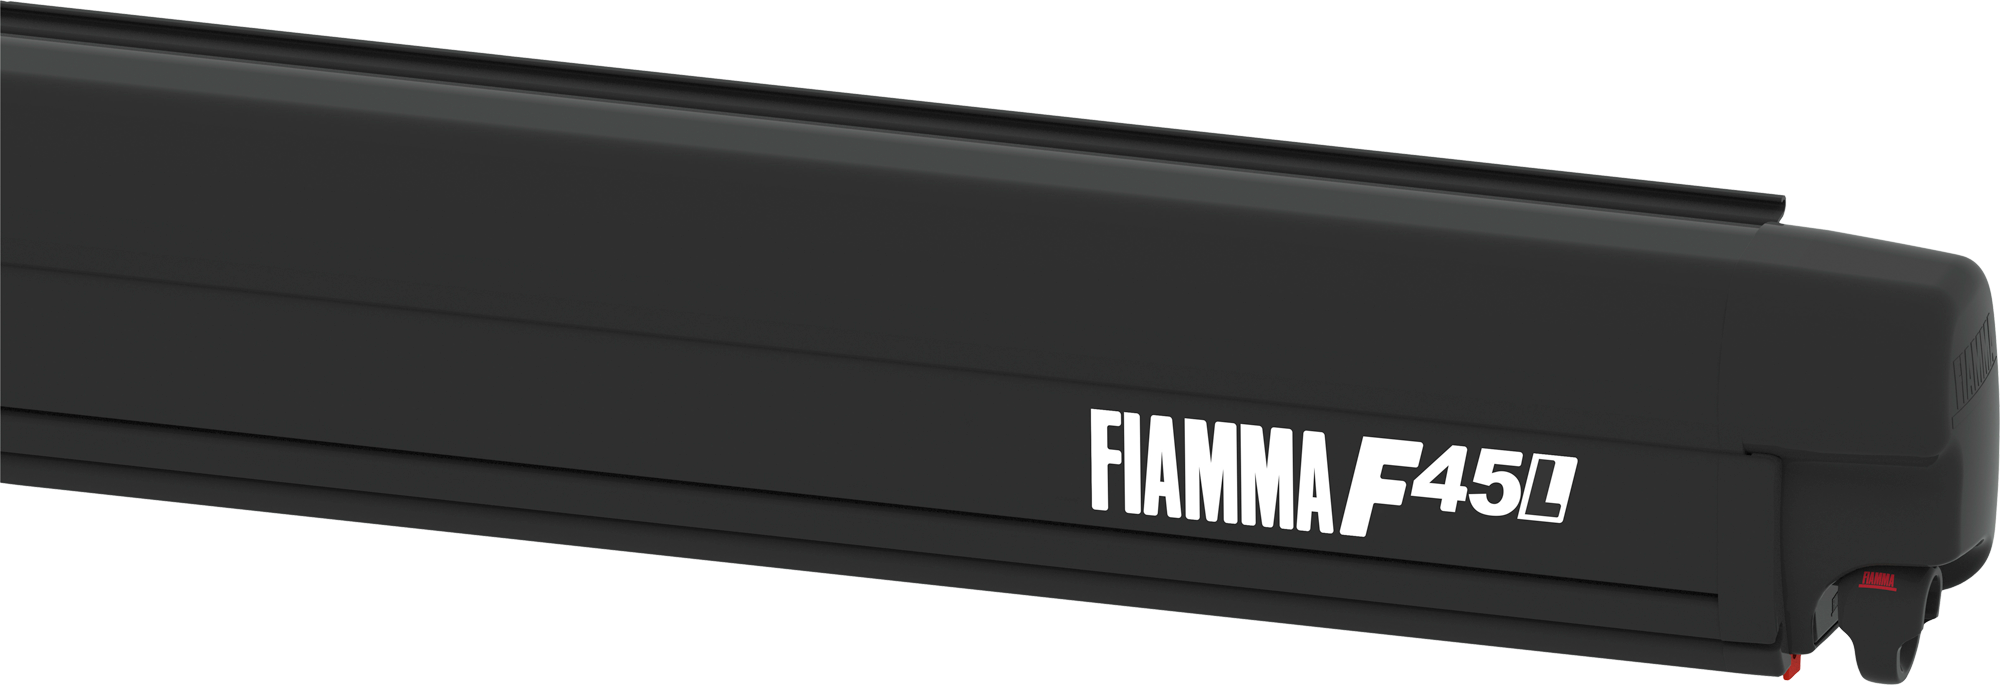 Fiamma F45L 450 Markise Gehäusefarbe Deep Black Tuchfarbe Royal Grey 450 cm